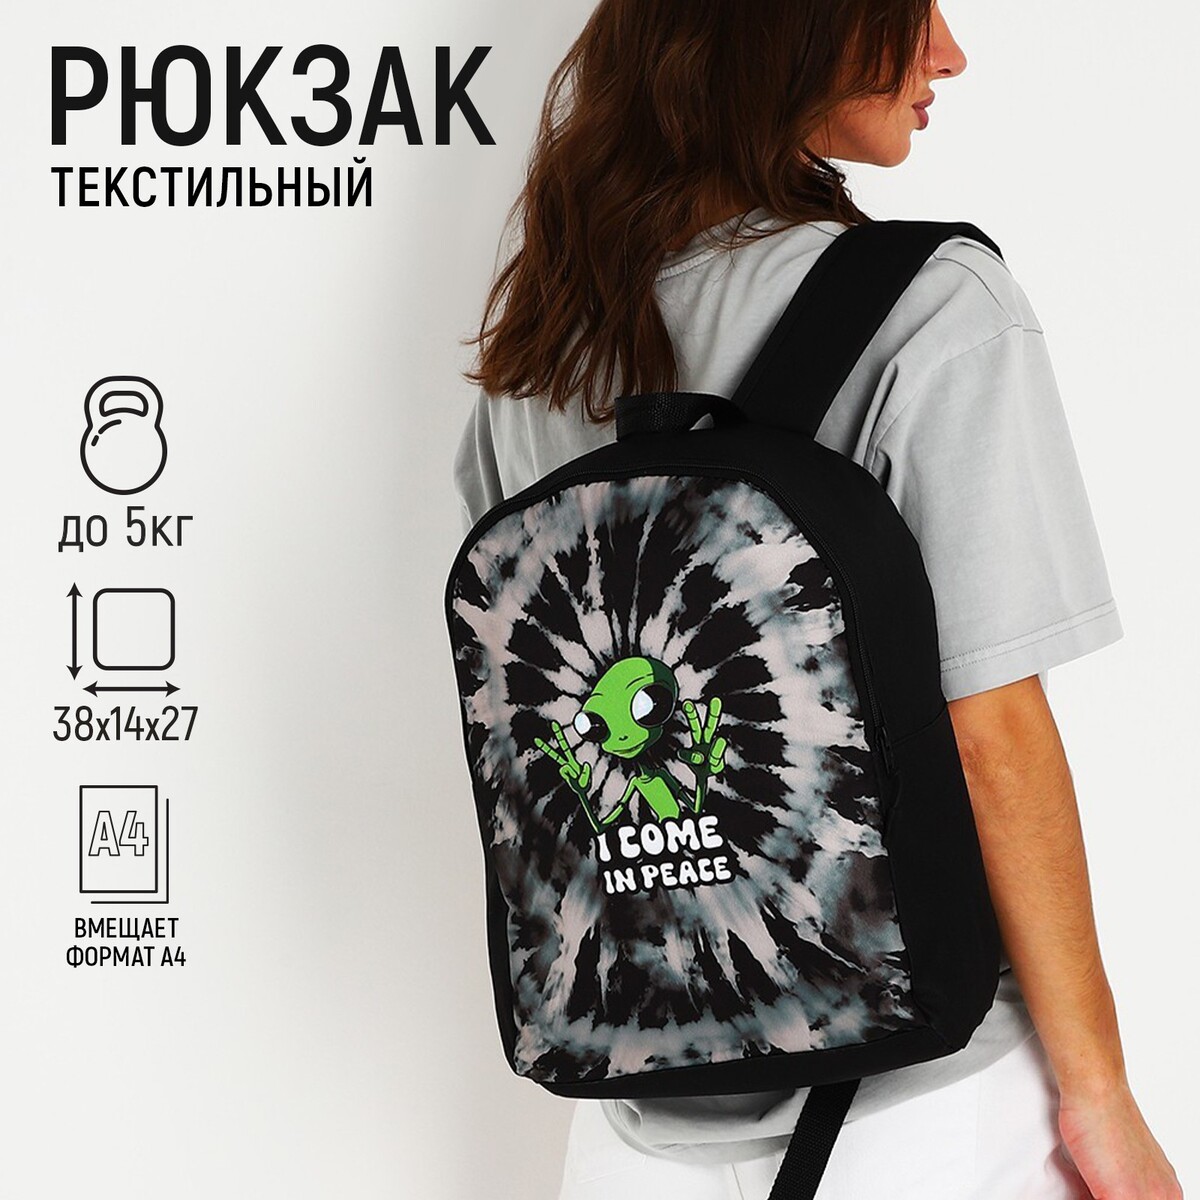 Рюкзак текстильный инопланетянин, 38х14х27 см, цвет черный